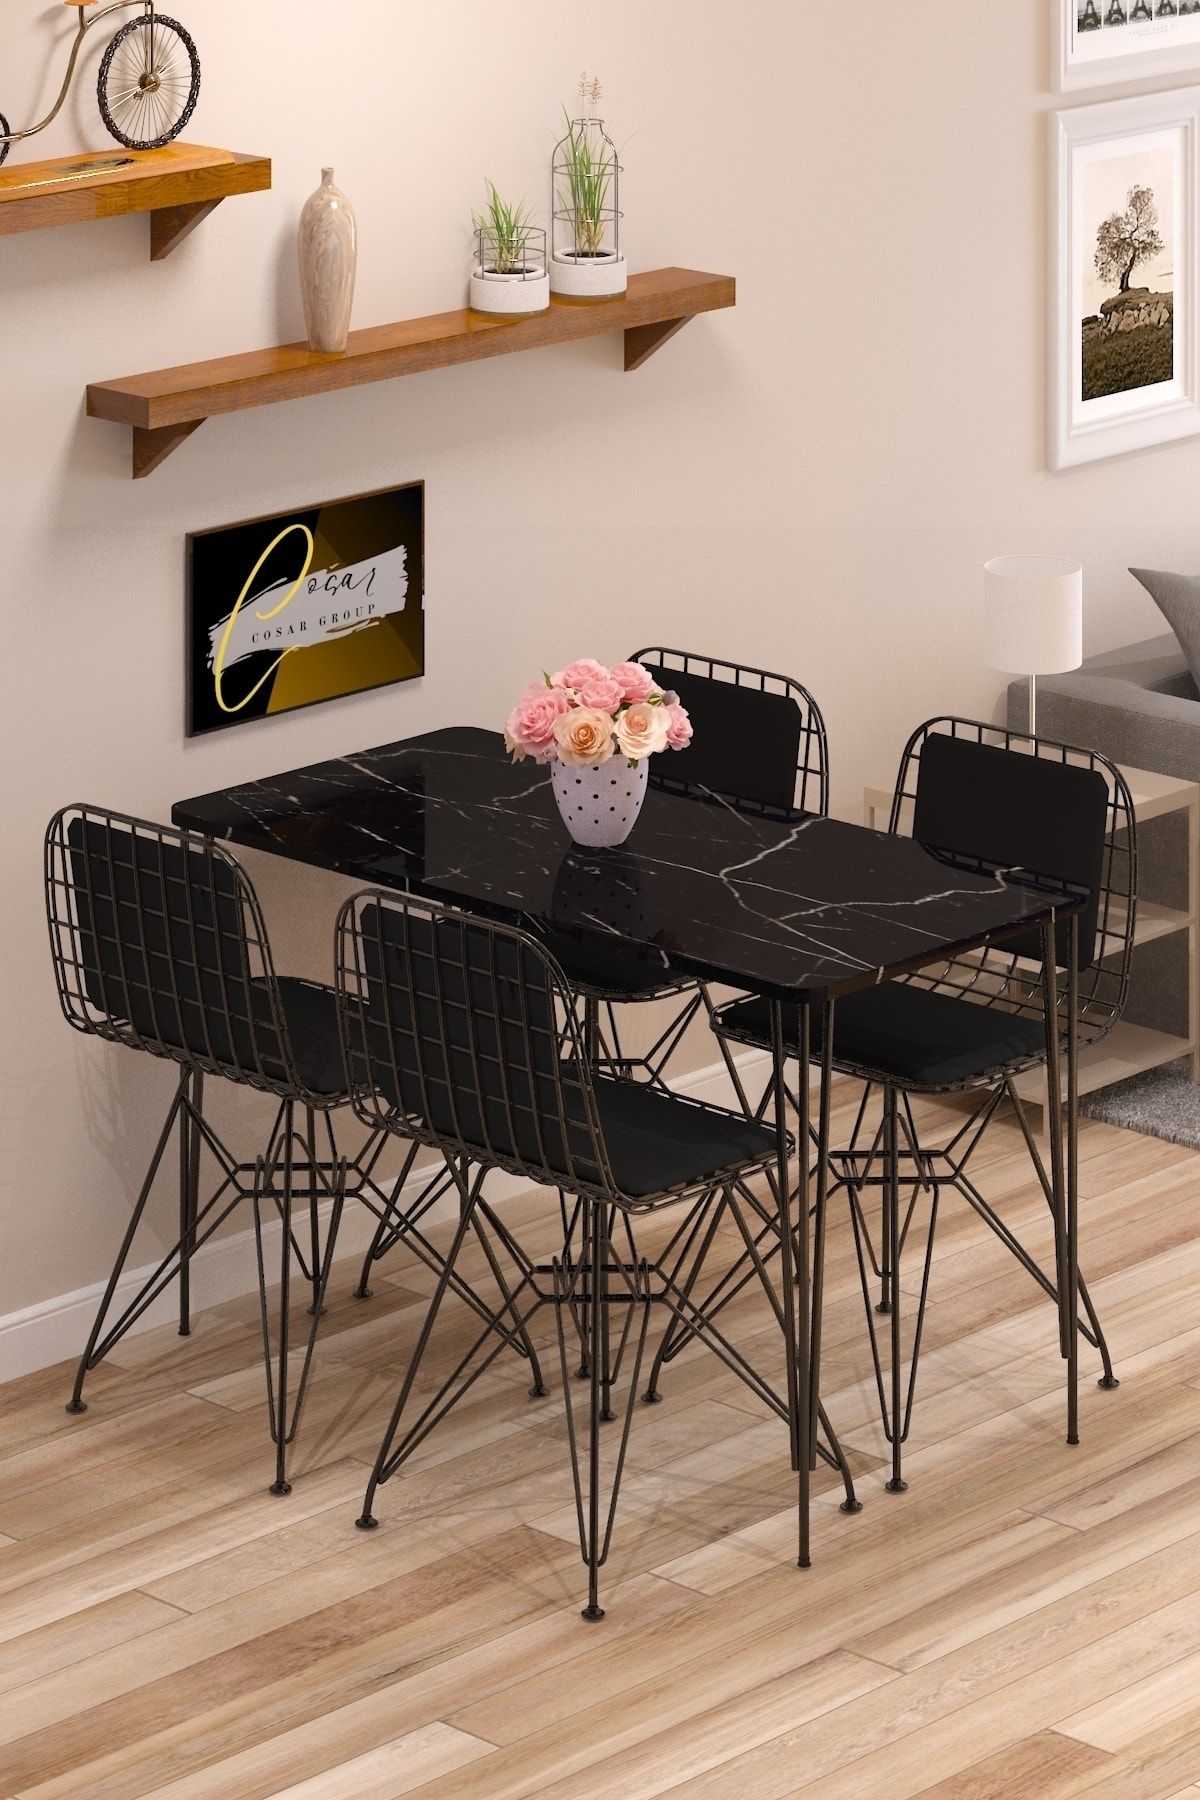 Cosargroup Yemek Masa Takımı Mutfak Masası Sırt Minderli 4 Adet Tel Sandalye 1 Adet Masa 60x120 Siyah